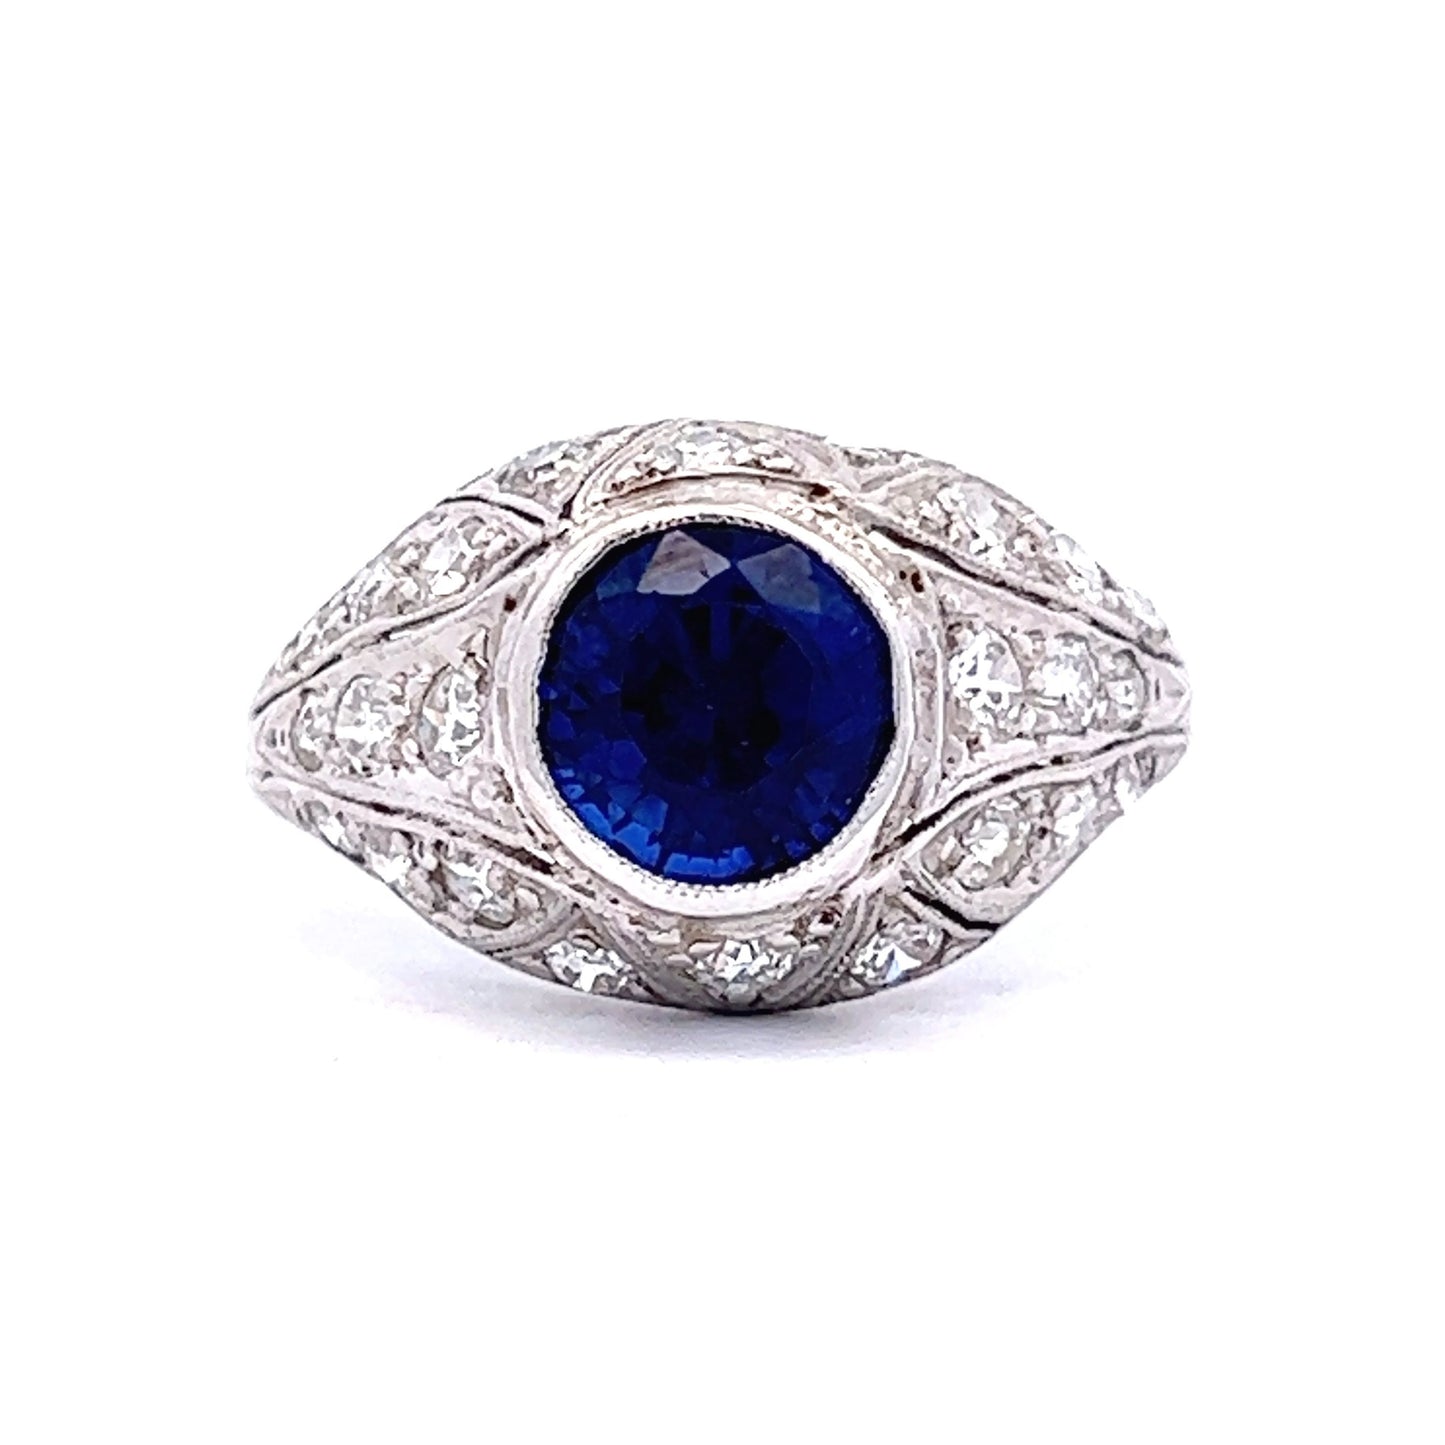 2.32 Art Deco Sapphire & Diamond Engagement Ring in Platinum